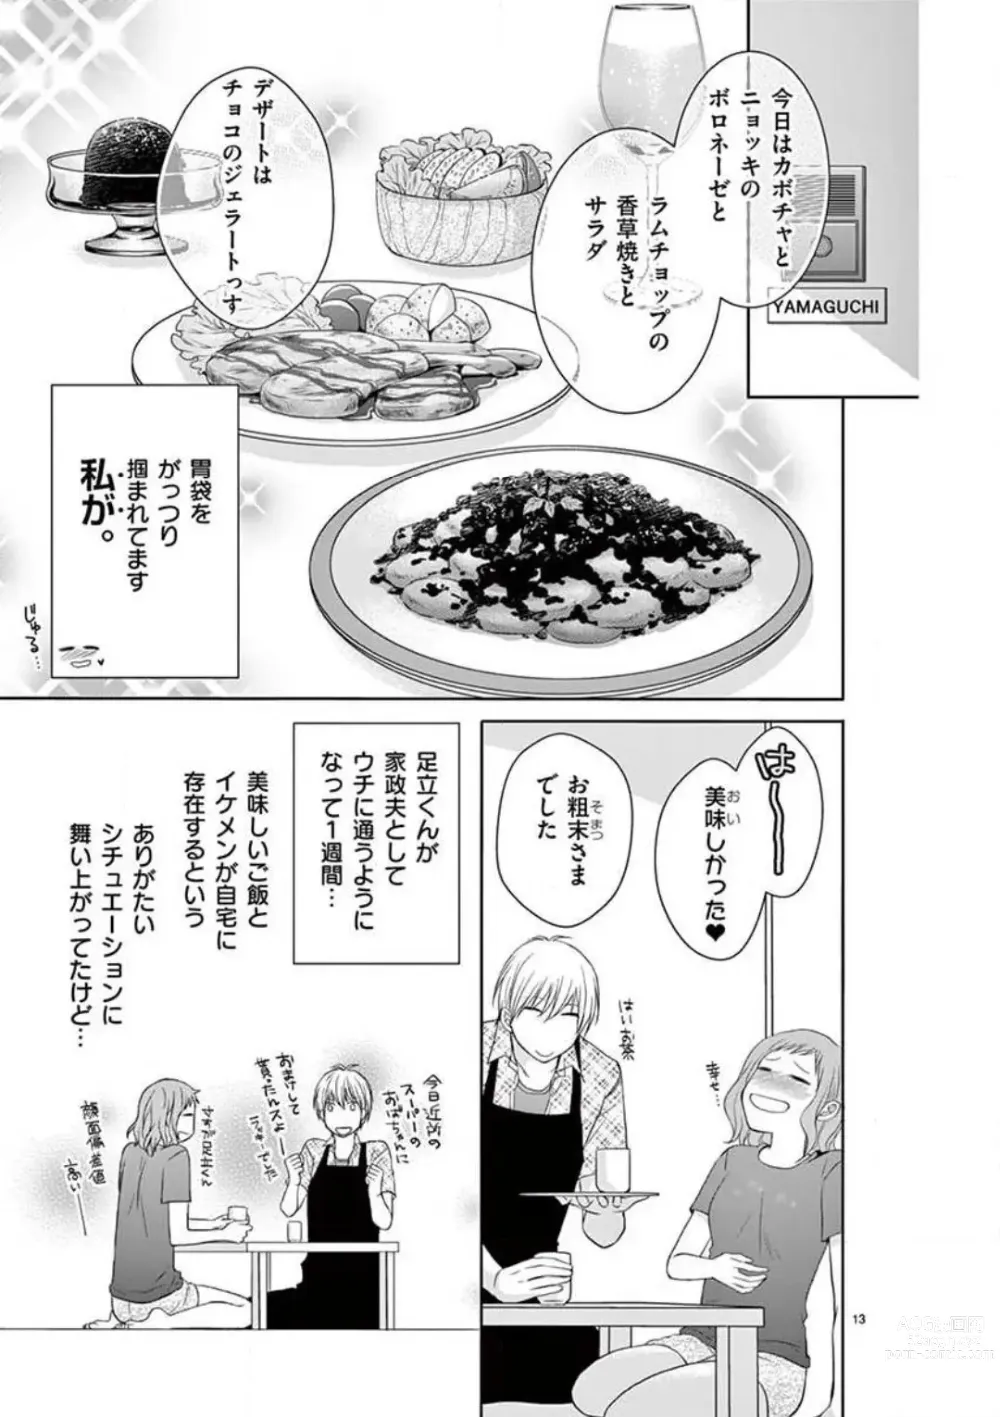 Page 13 of manga Senpai Gentei no Kedamonodesukara 〜 Kanshō-yō Ikemen no Hotobashiru Aijō〜 1-4